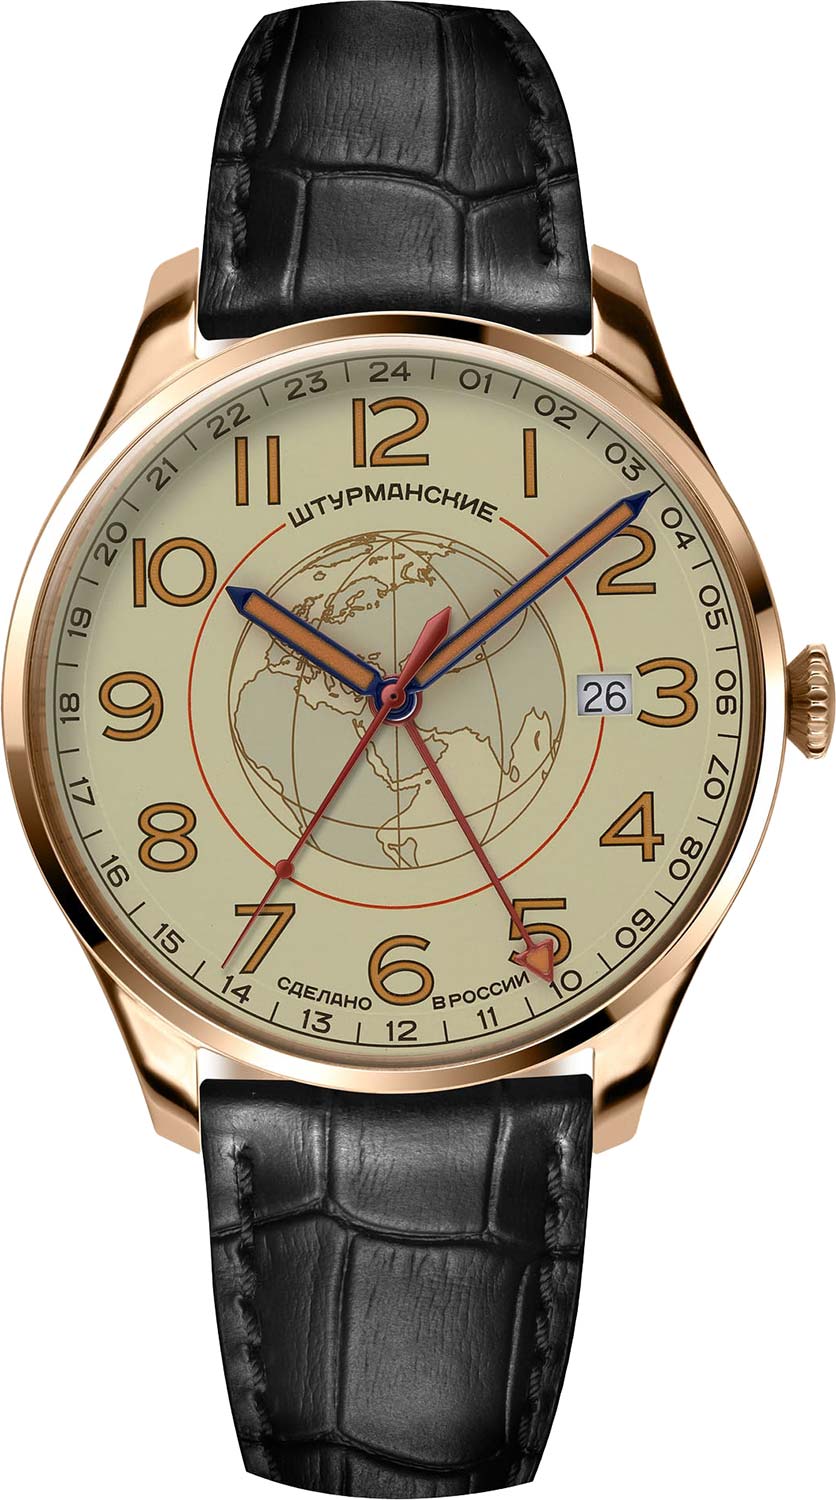 Российские наручные часы Штурманские 51524-1079664